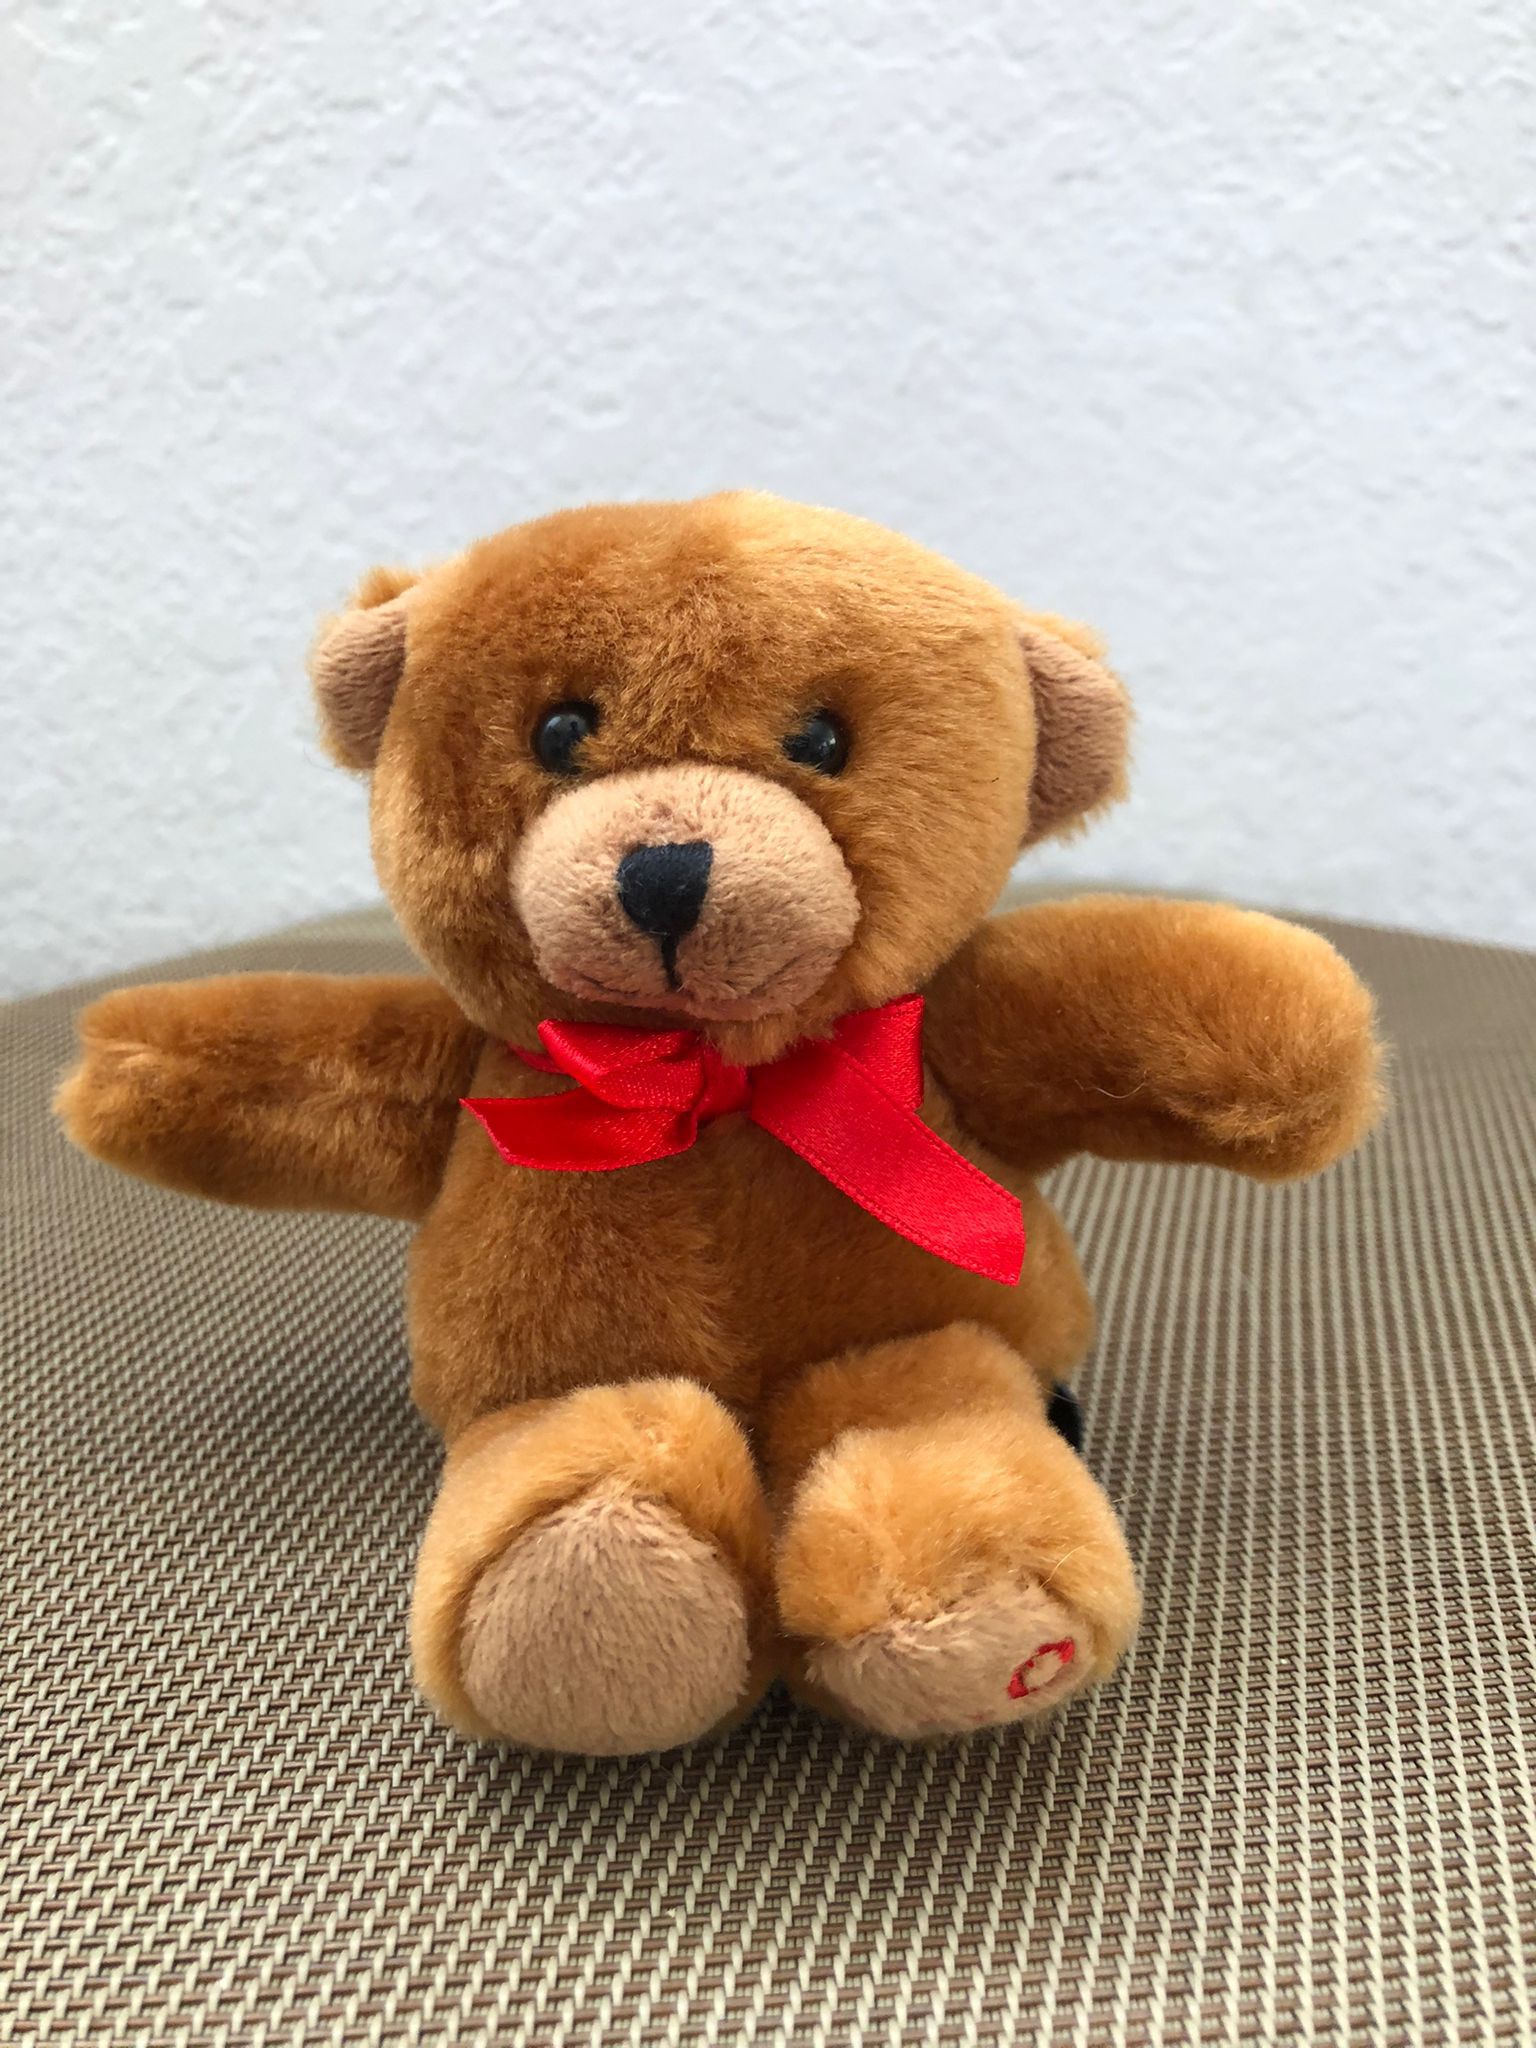 FAO Schwarz Tiny 5" Teddy Bear With Red Bow 2018 Valentine's Day